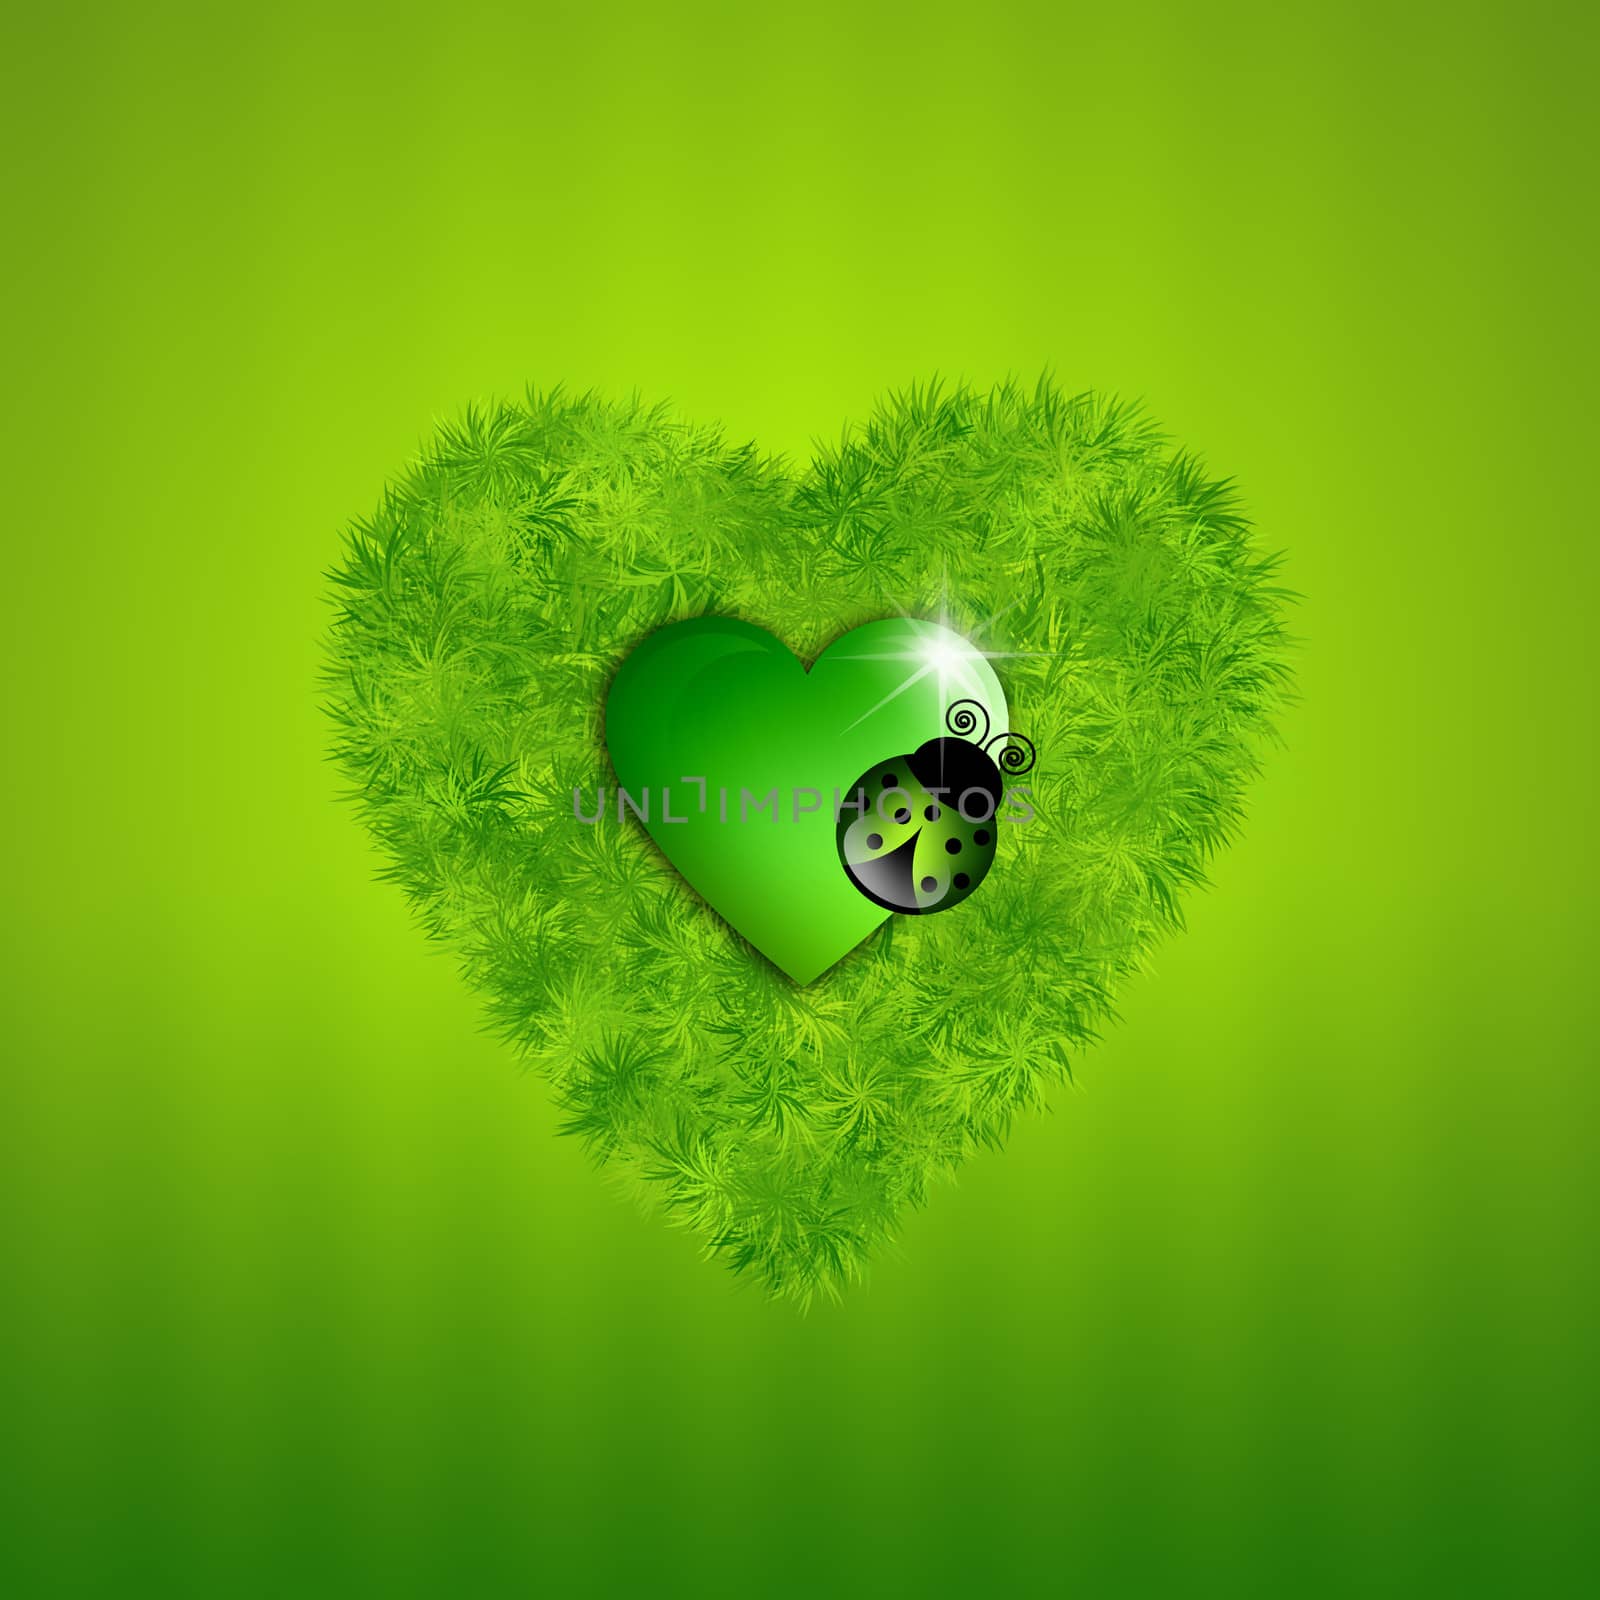 Green grass heart